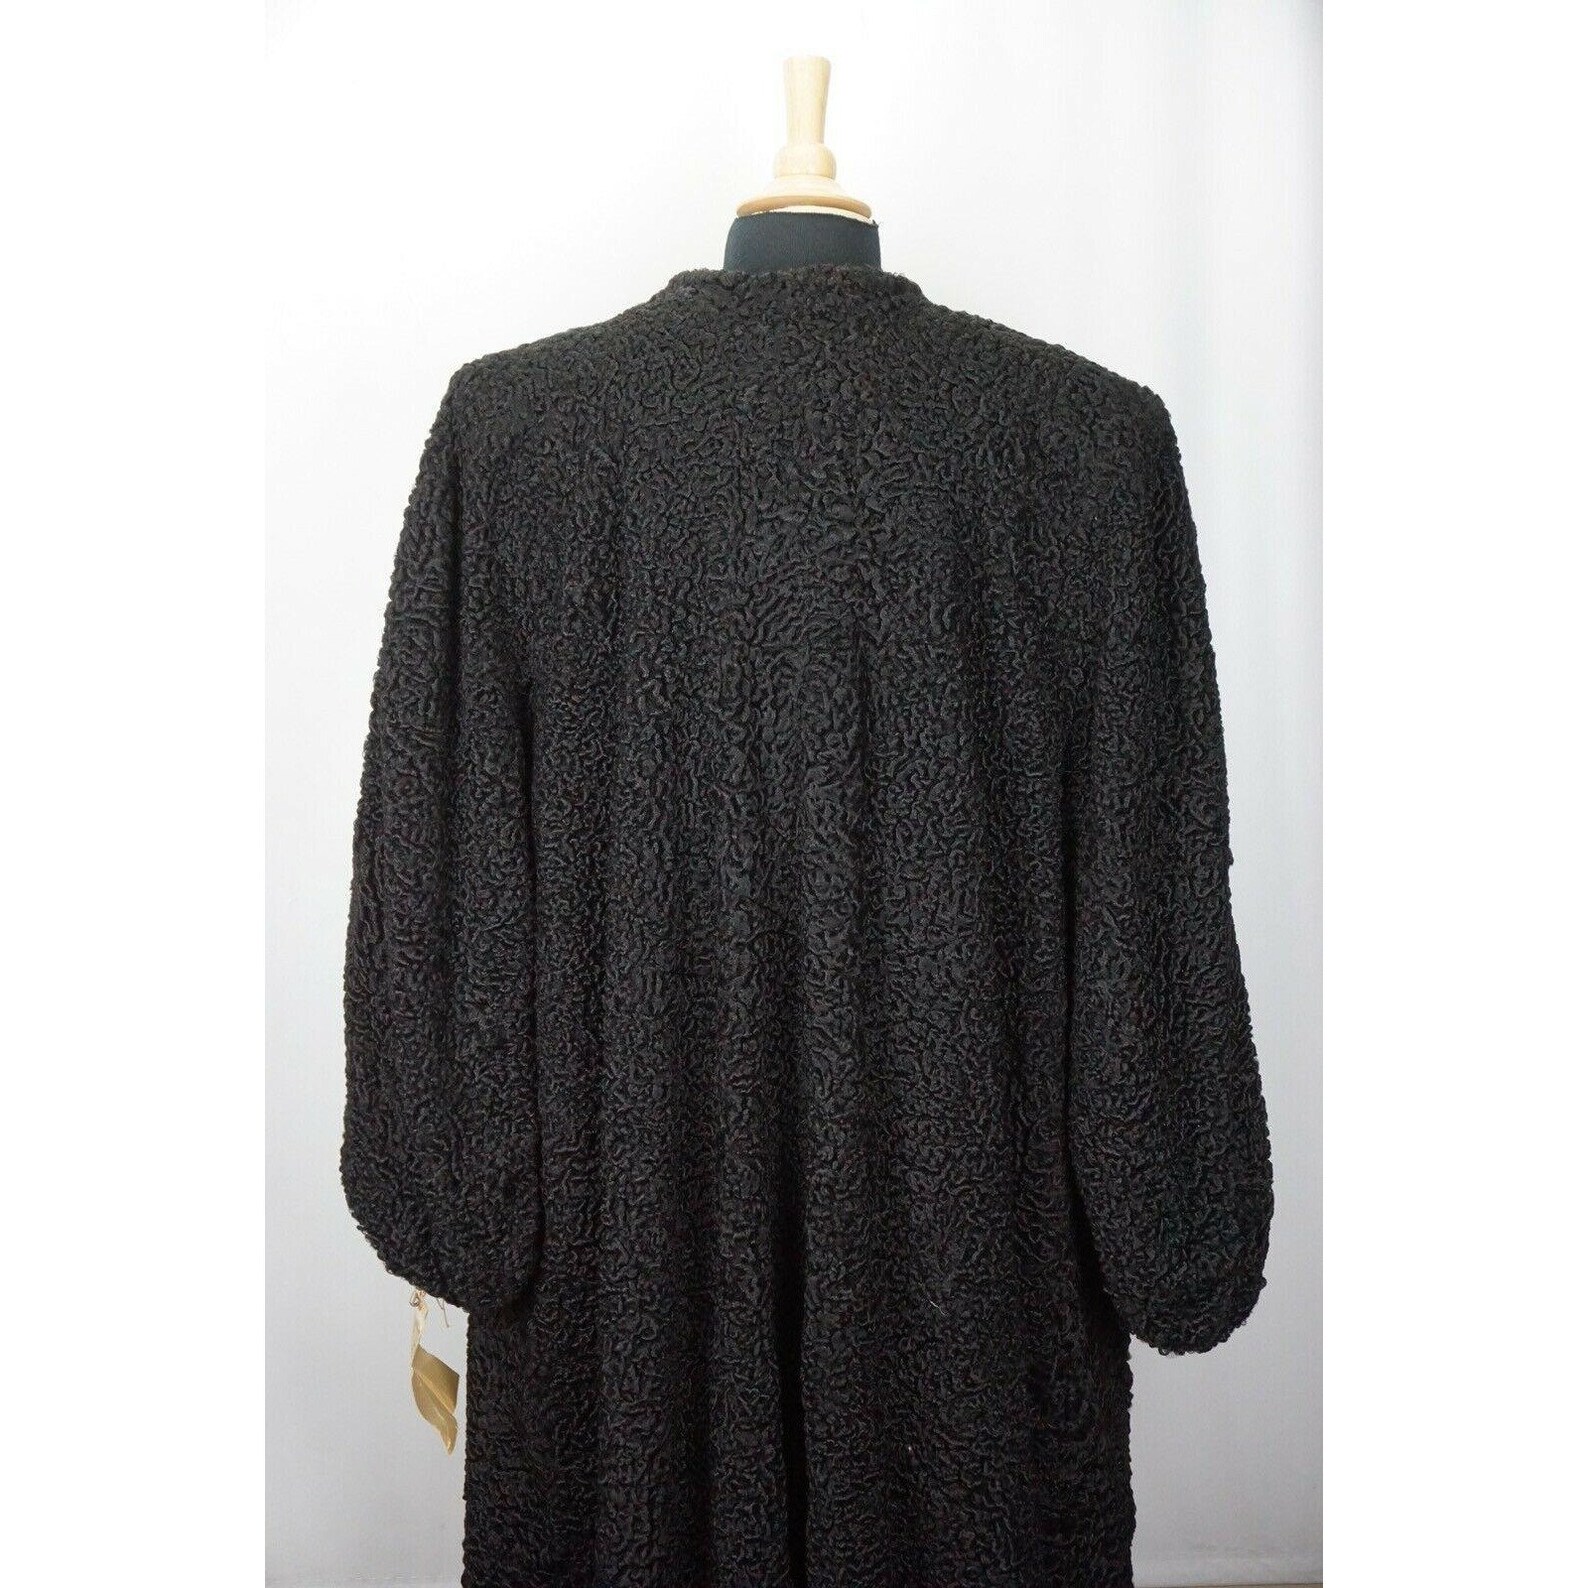 LUXURY VINTAGE 1947 Handmade Black Persian Fur Long Coat - Etsy UK